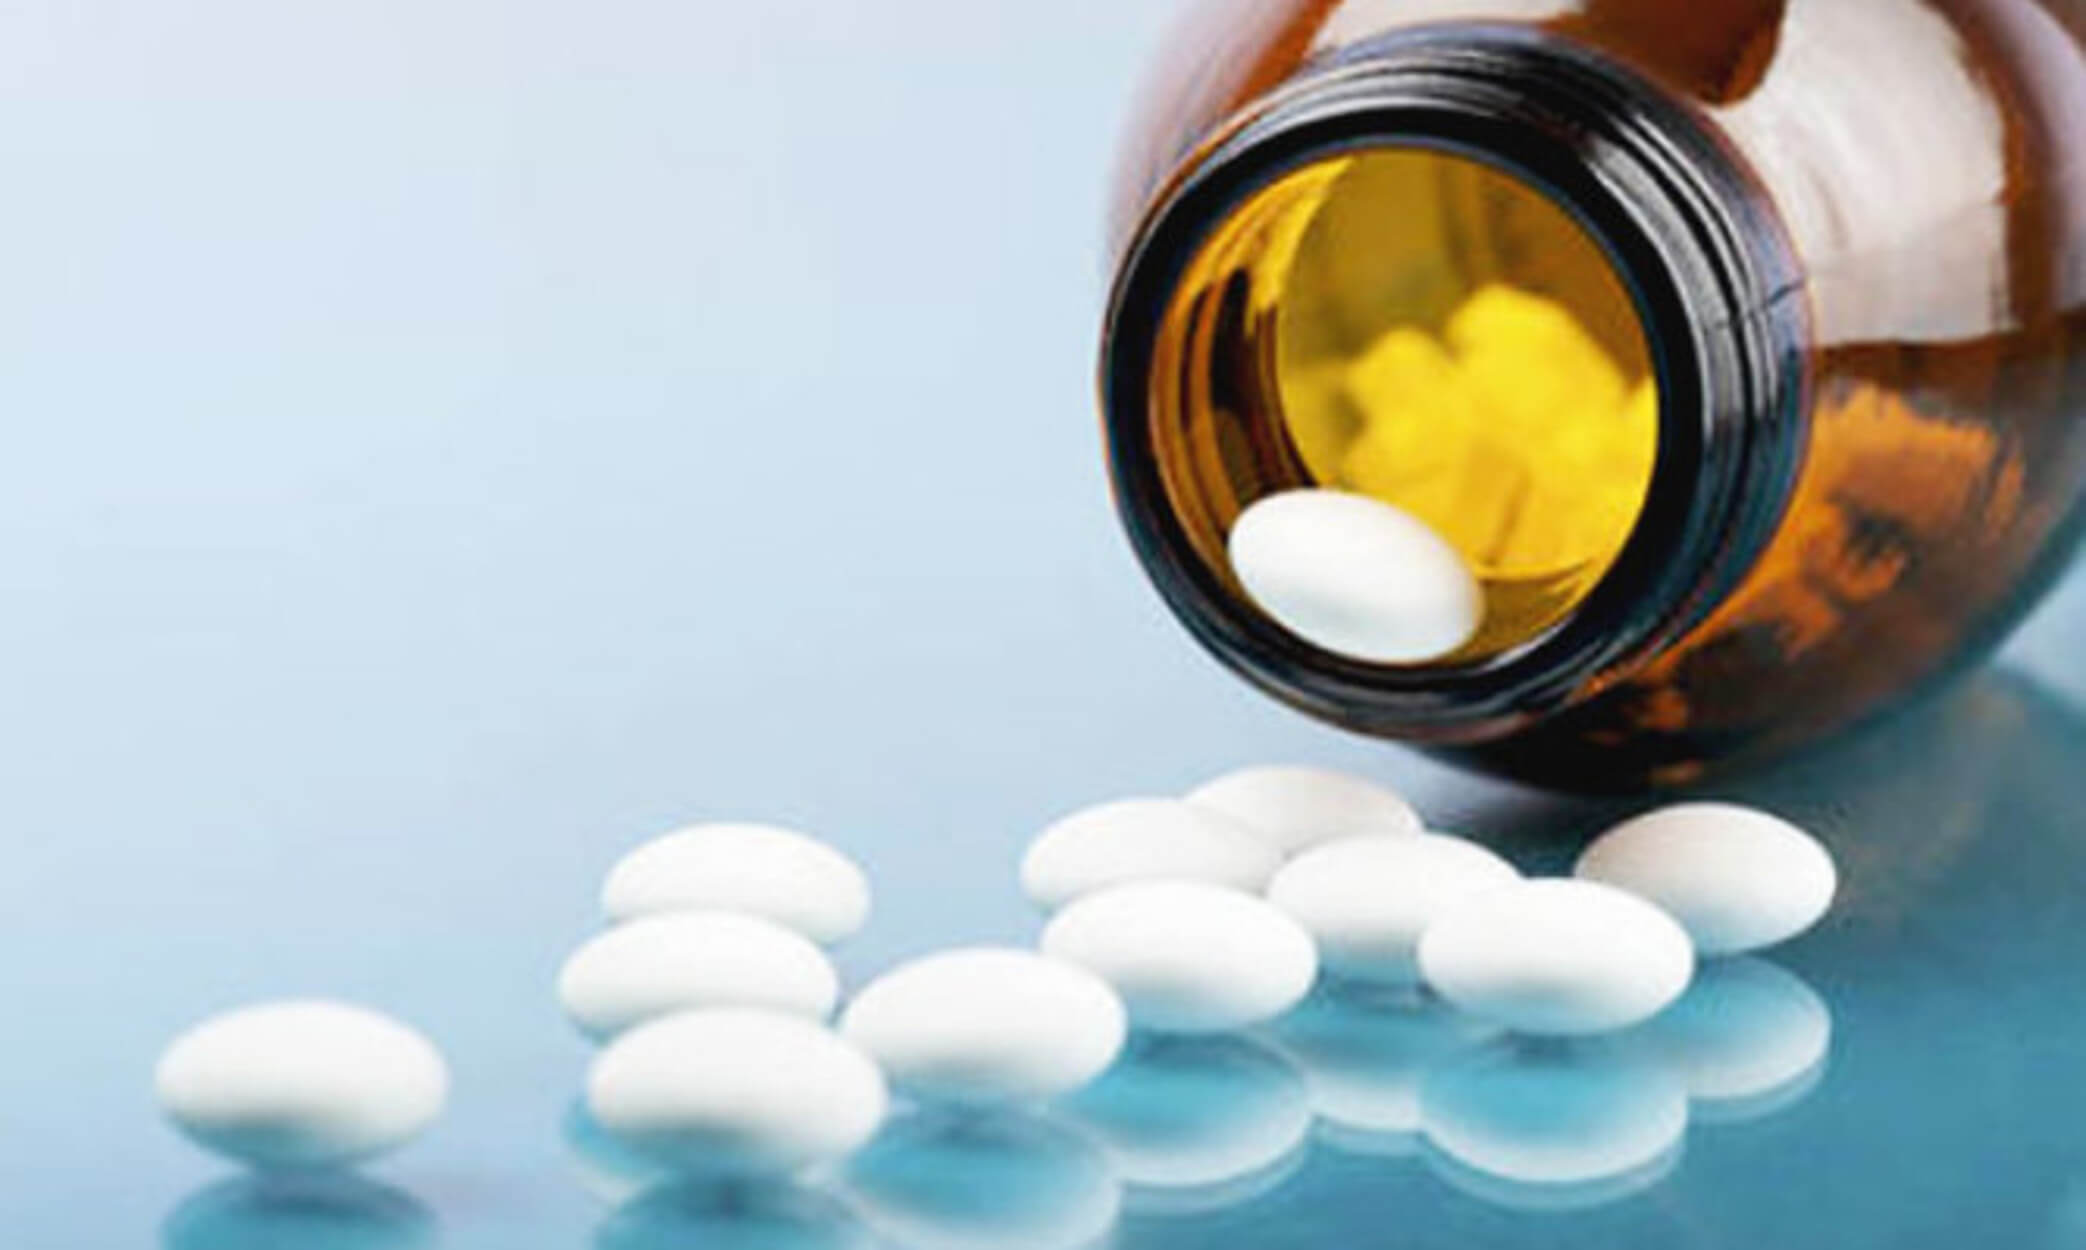 Ανακαλεί φάρμακο ο ΕΟΦ! Κίνδυνος για την υγεία όσων το καταναλώσουν